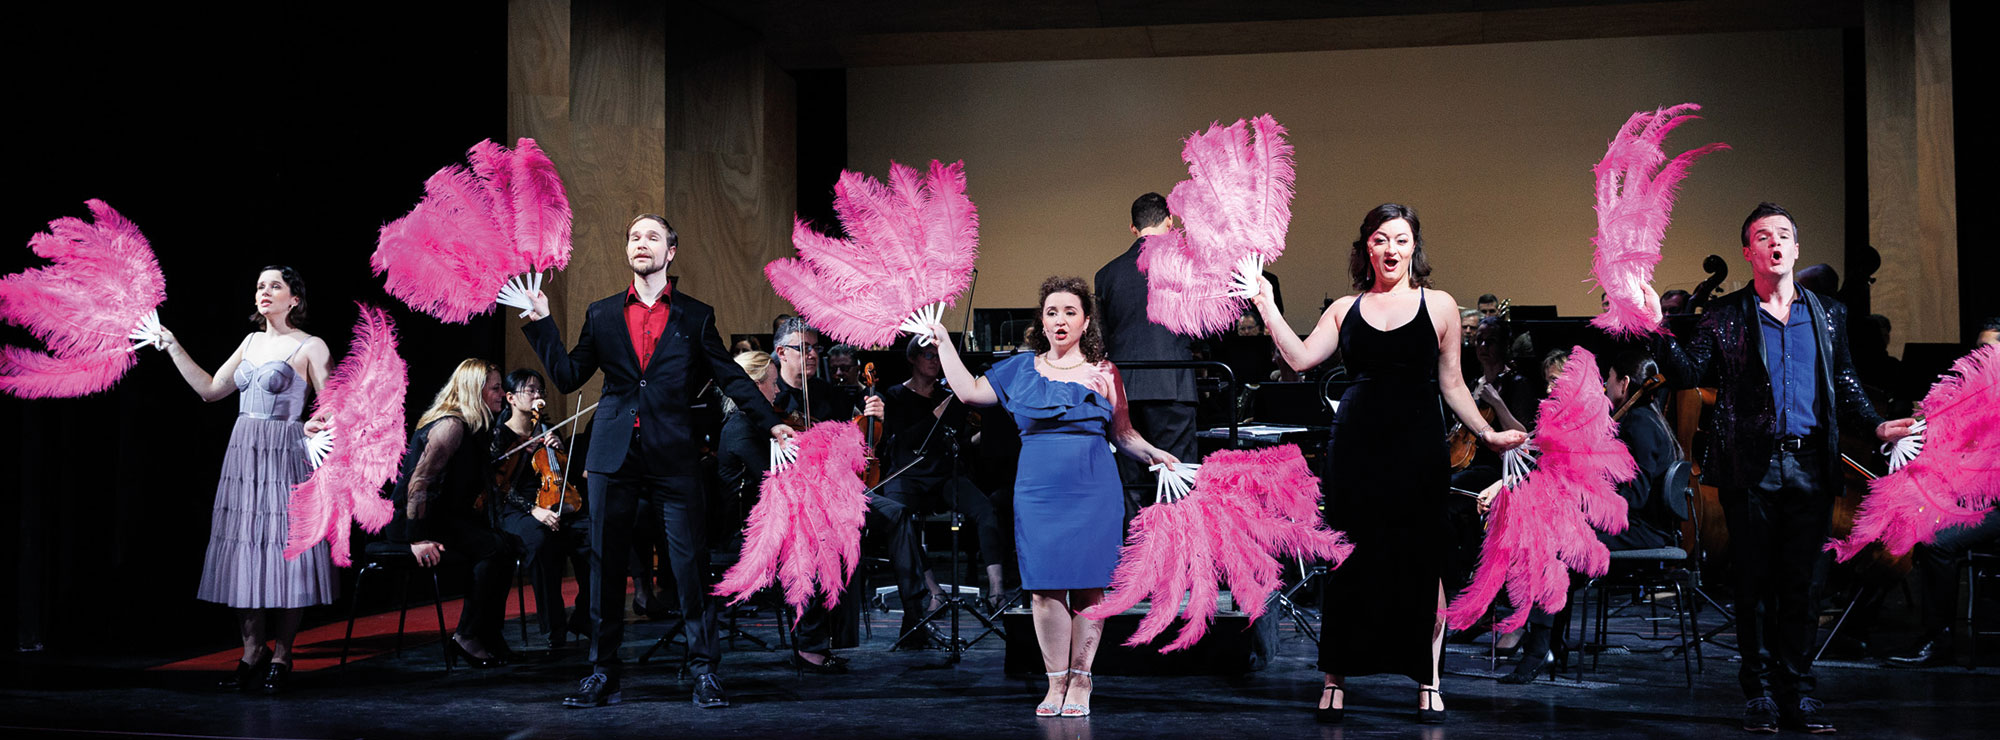 Die Solistinnen und Solisten der MUSICALGALA posieren mit großen pinken Fächern aus Federn